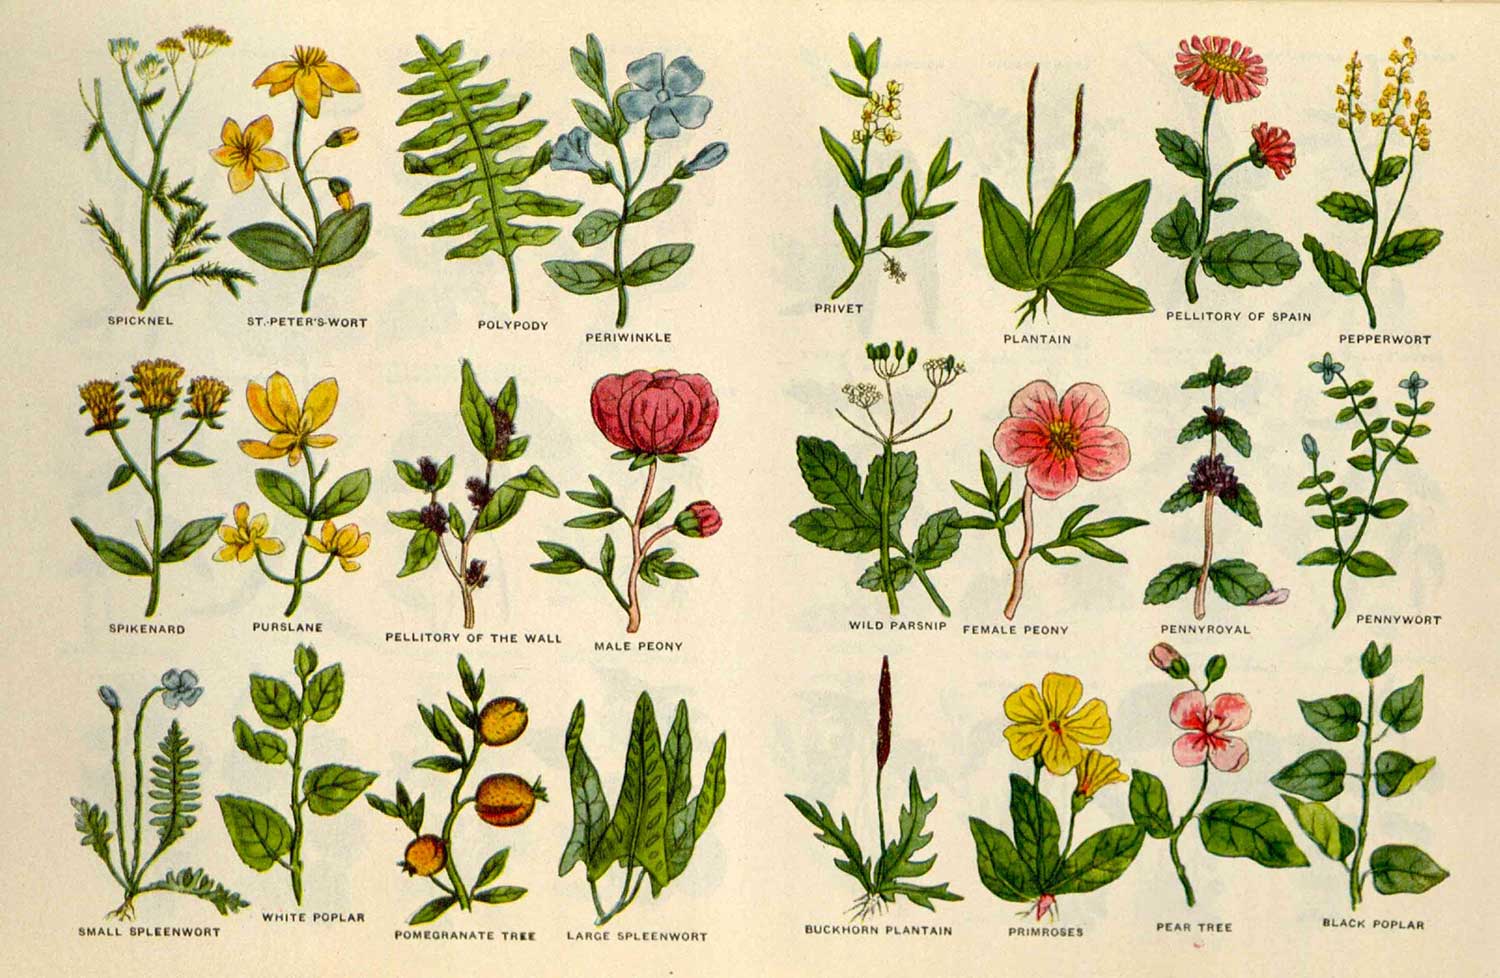 Monastic herb gardens and Nicholas Culpeper's herbal legacy